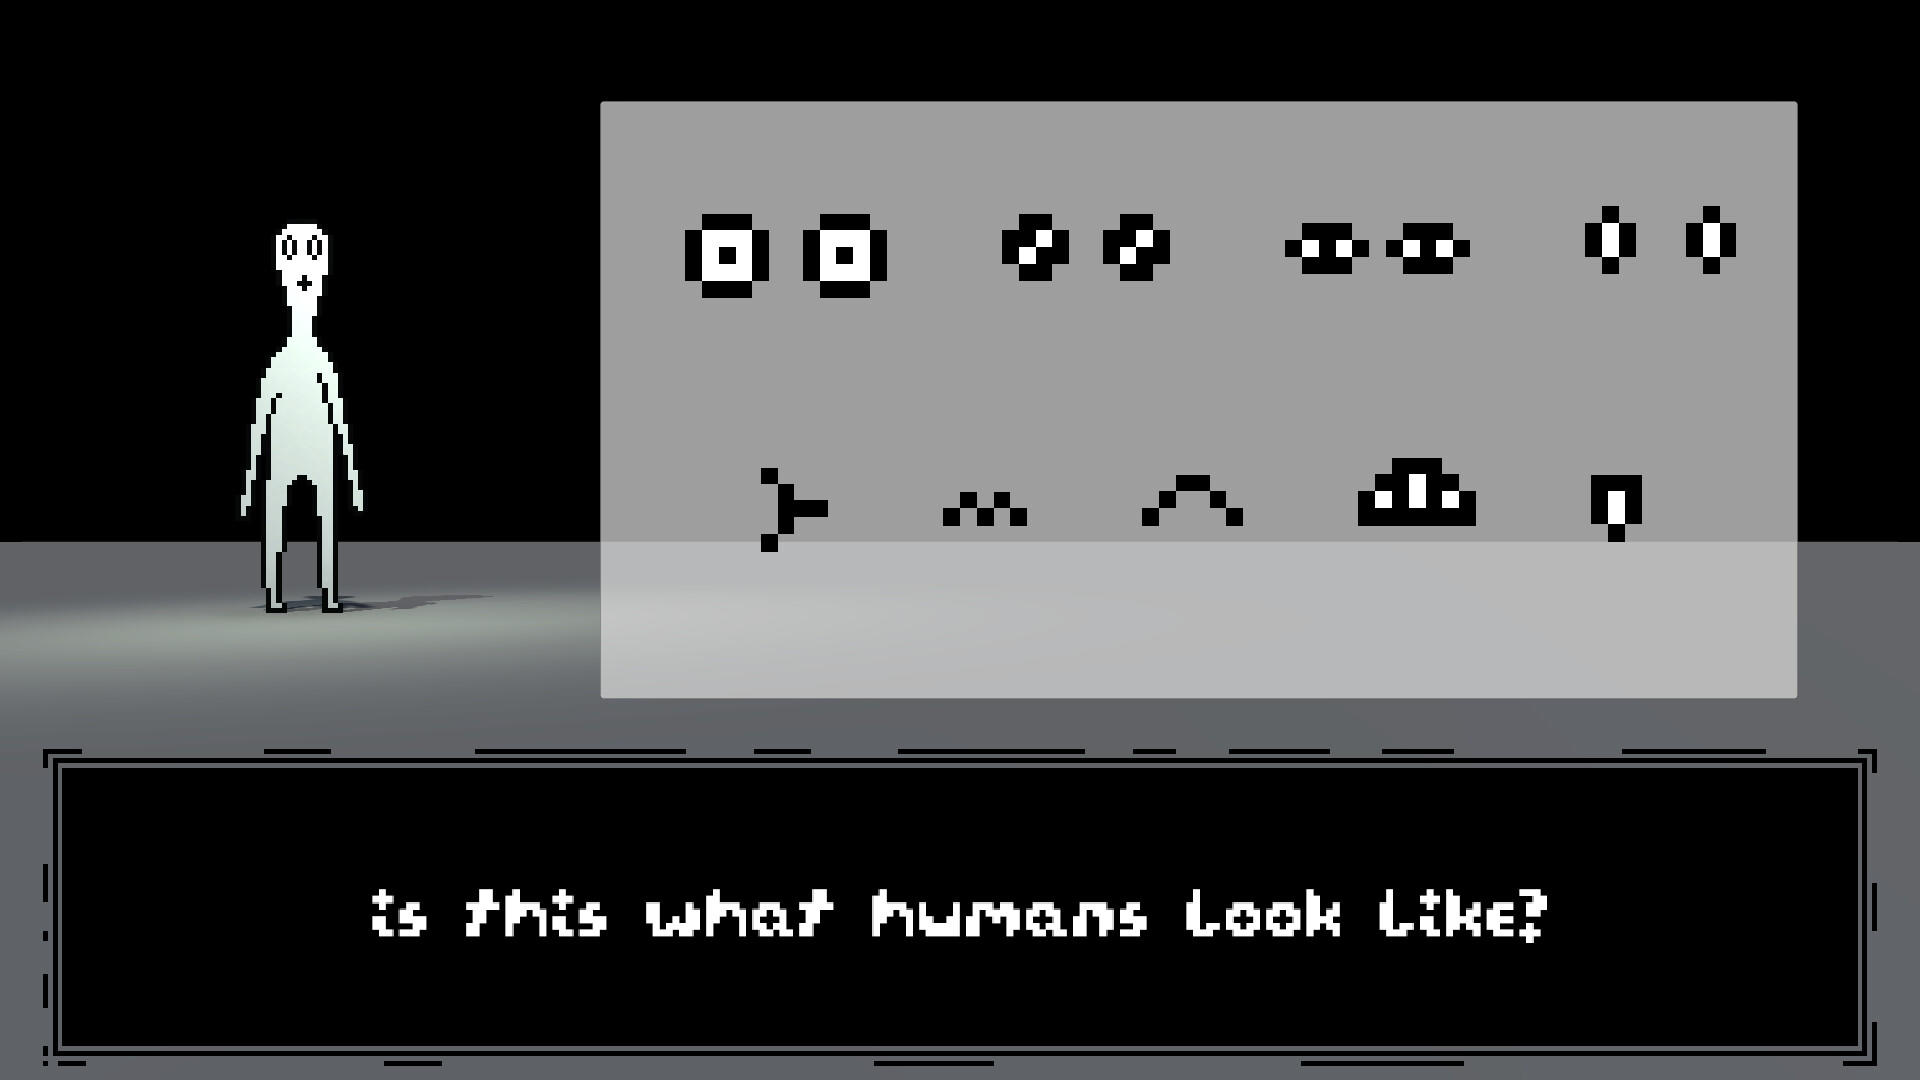 Creatures After Calamity screenshot game